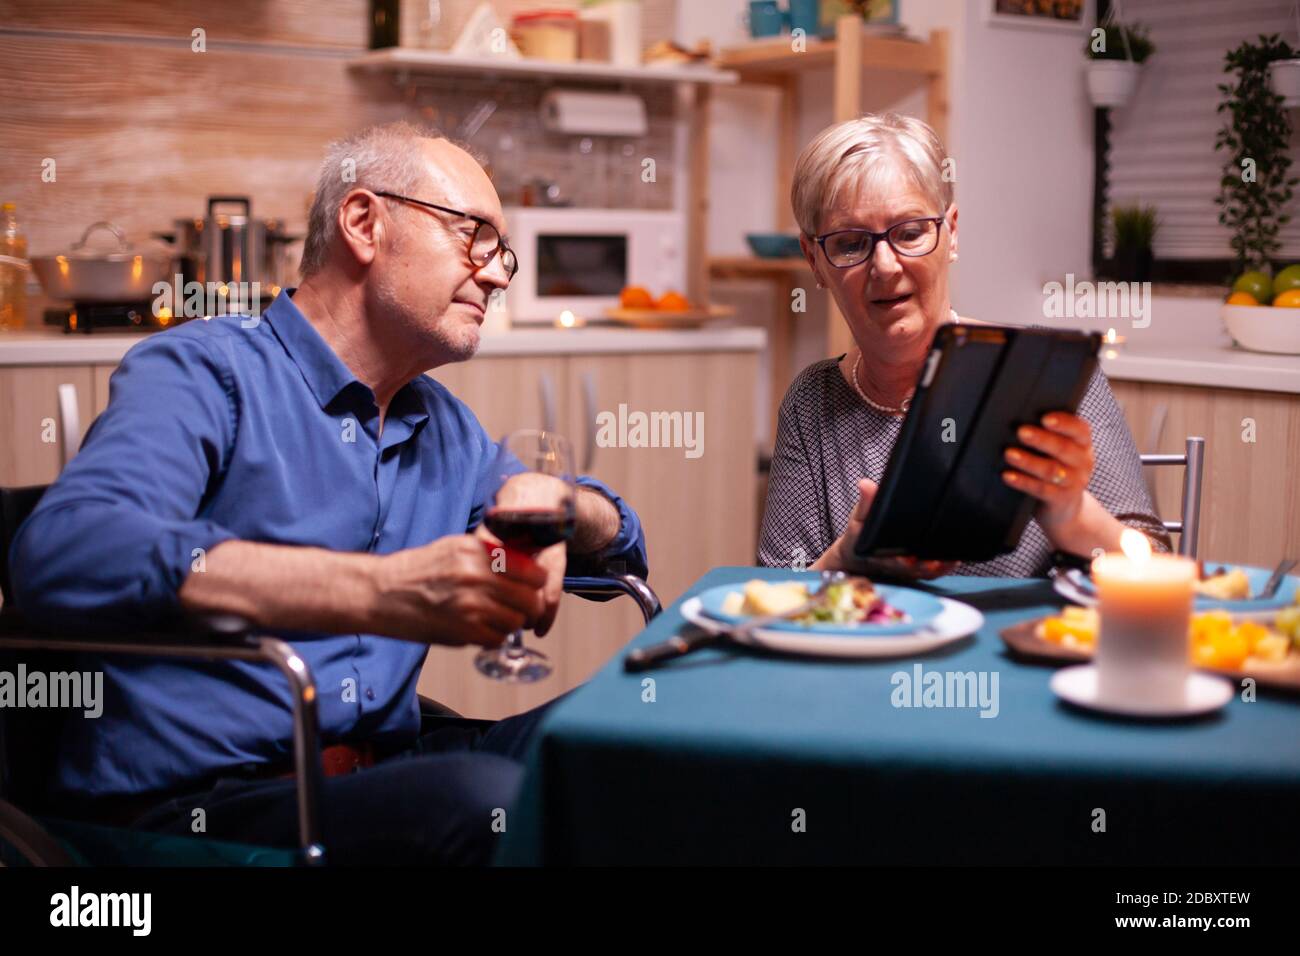 Ältere Frau, die auf einem Tablet-pc browst, und behinderter Mann im Rollstuhl, der Weinglas hält. Imobilisierter behinderter älterer Ehemann, der am Telefon surft und den festlichen Mann genießt und ein Glas Rotwein trinkt. Stockfoto